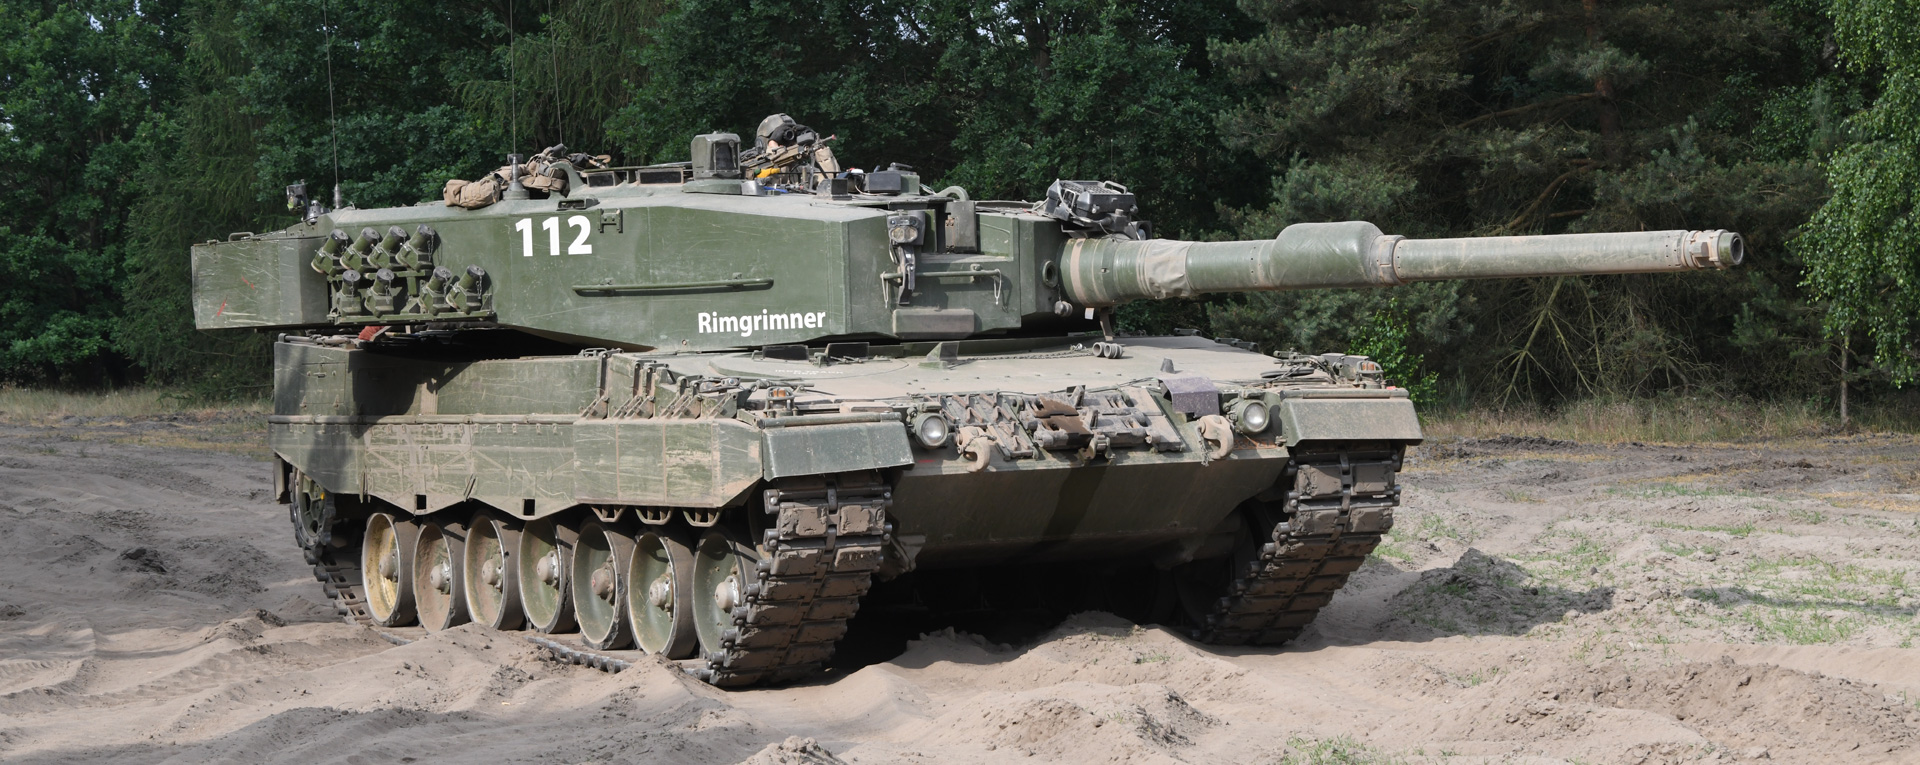 Η Δανία και η Ολλανδία θα δωρίσουν από κοινού 14 άρματα μάχης Leopard 2A4 στην Ουκρανία